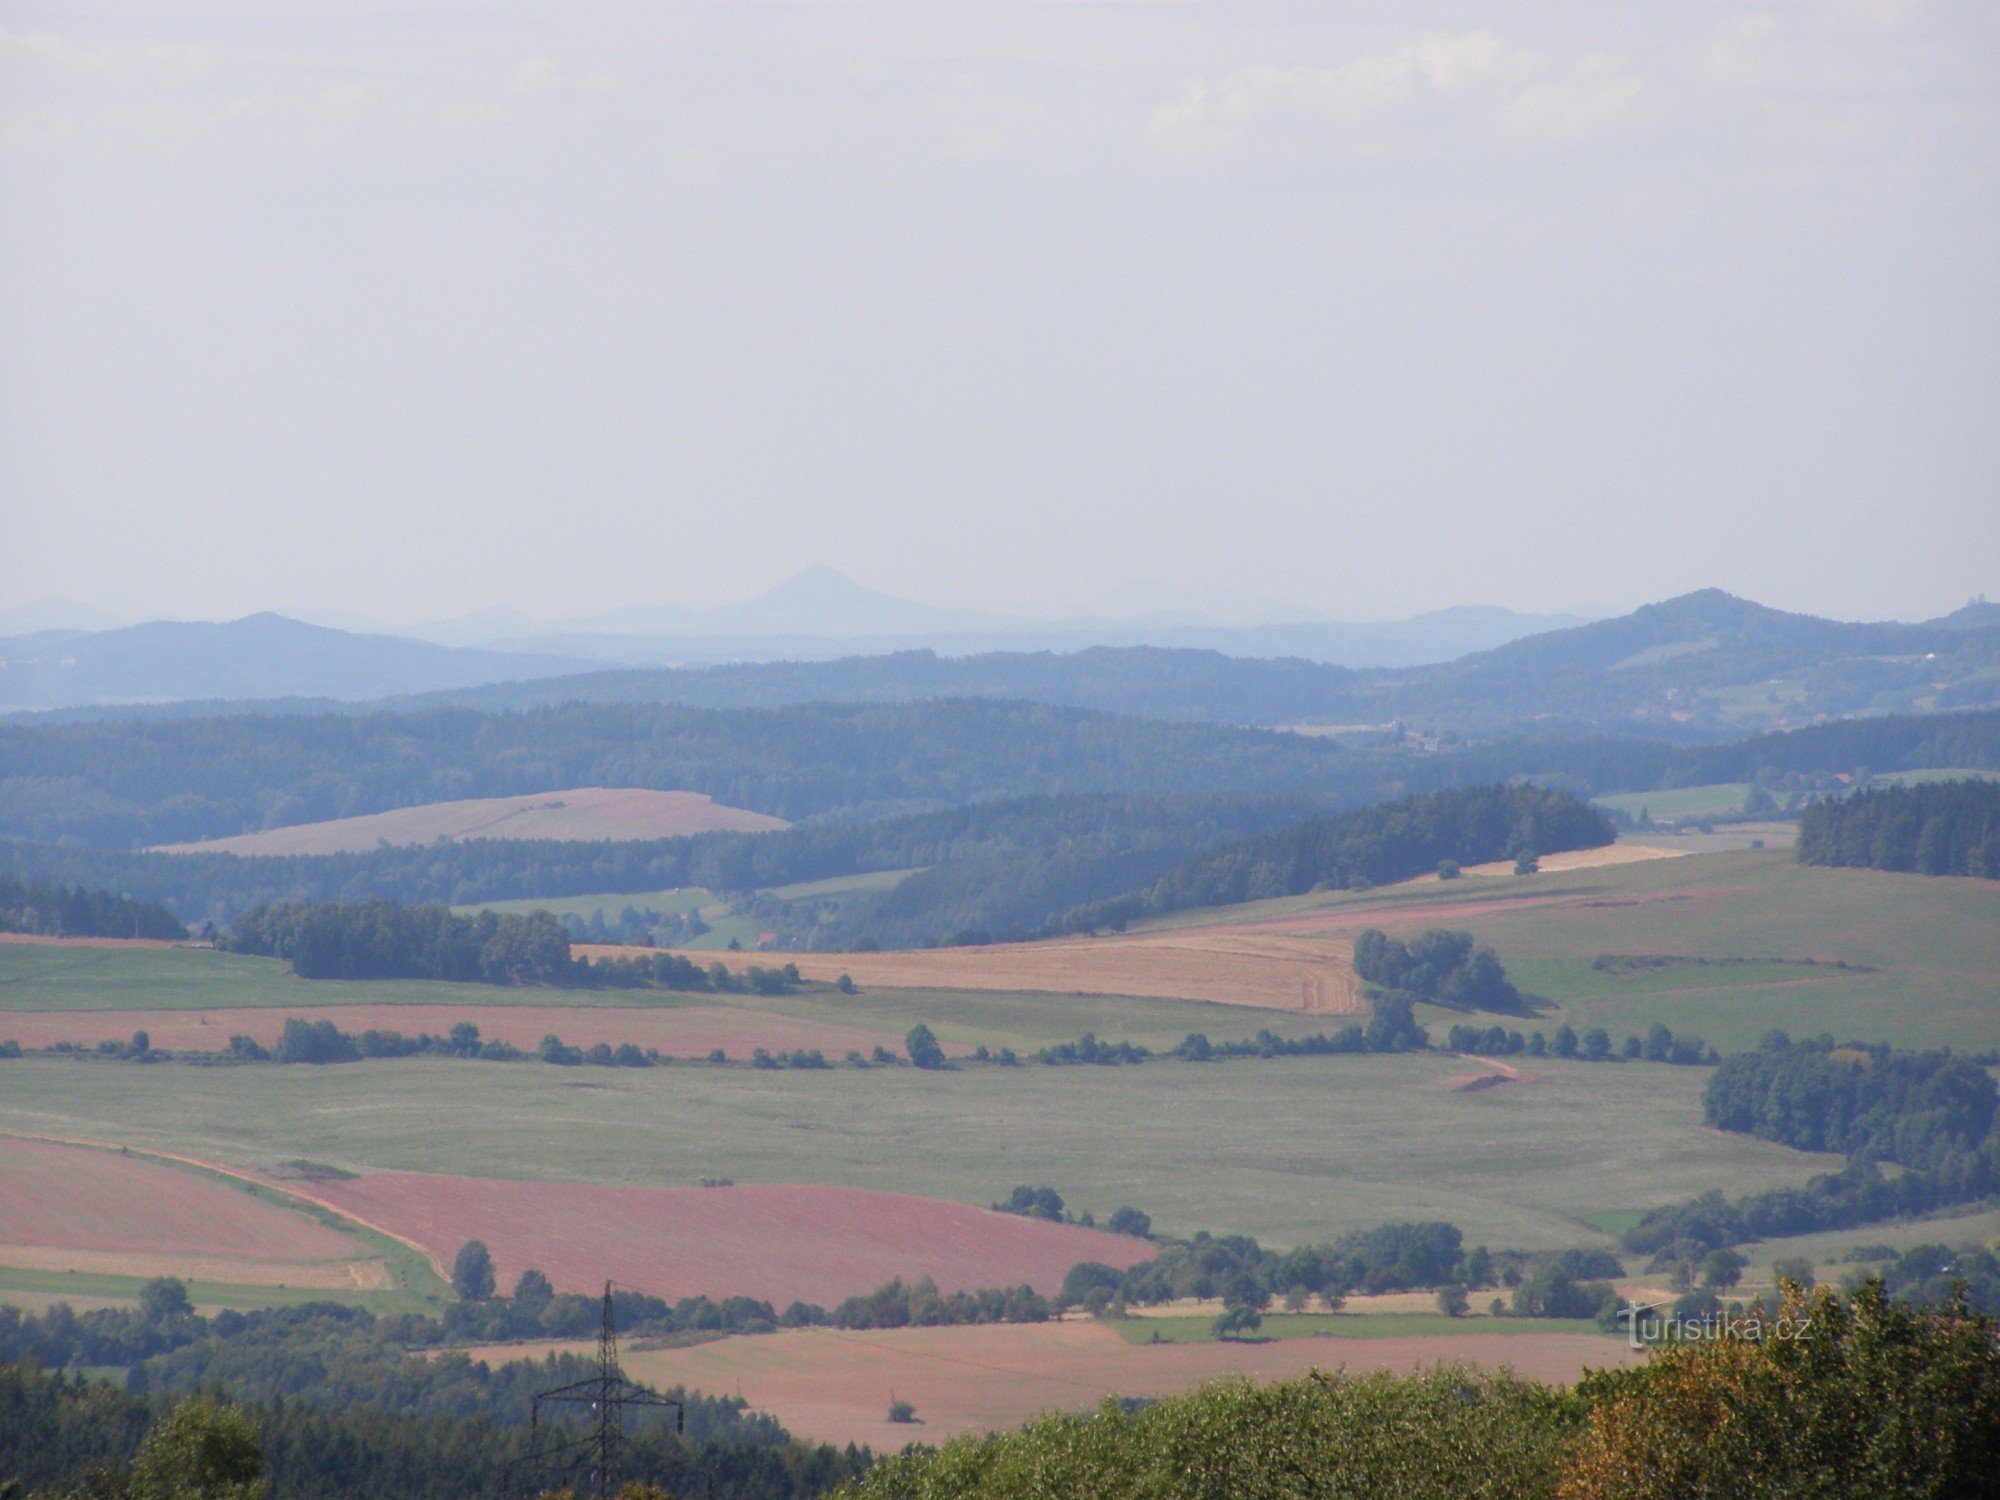 views from Zvičina, Bezděz in the background